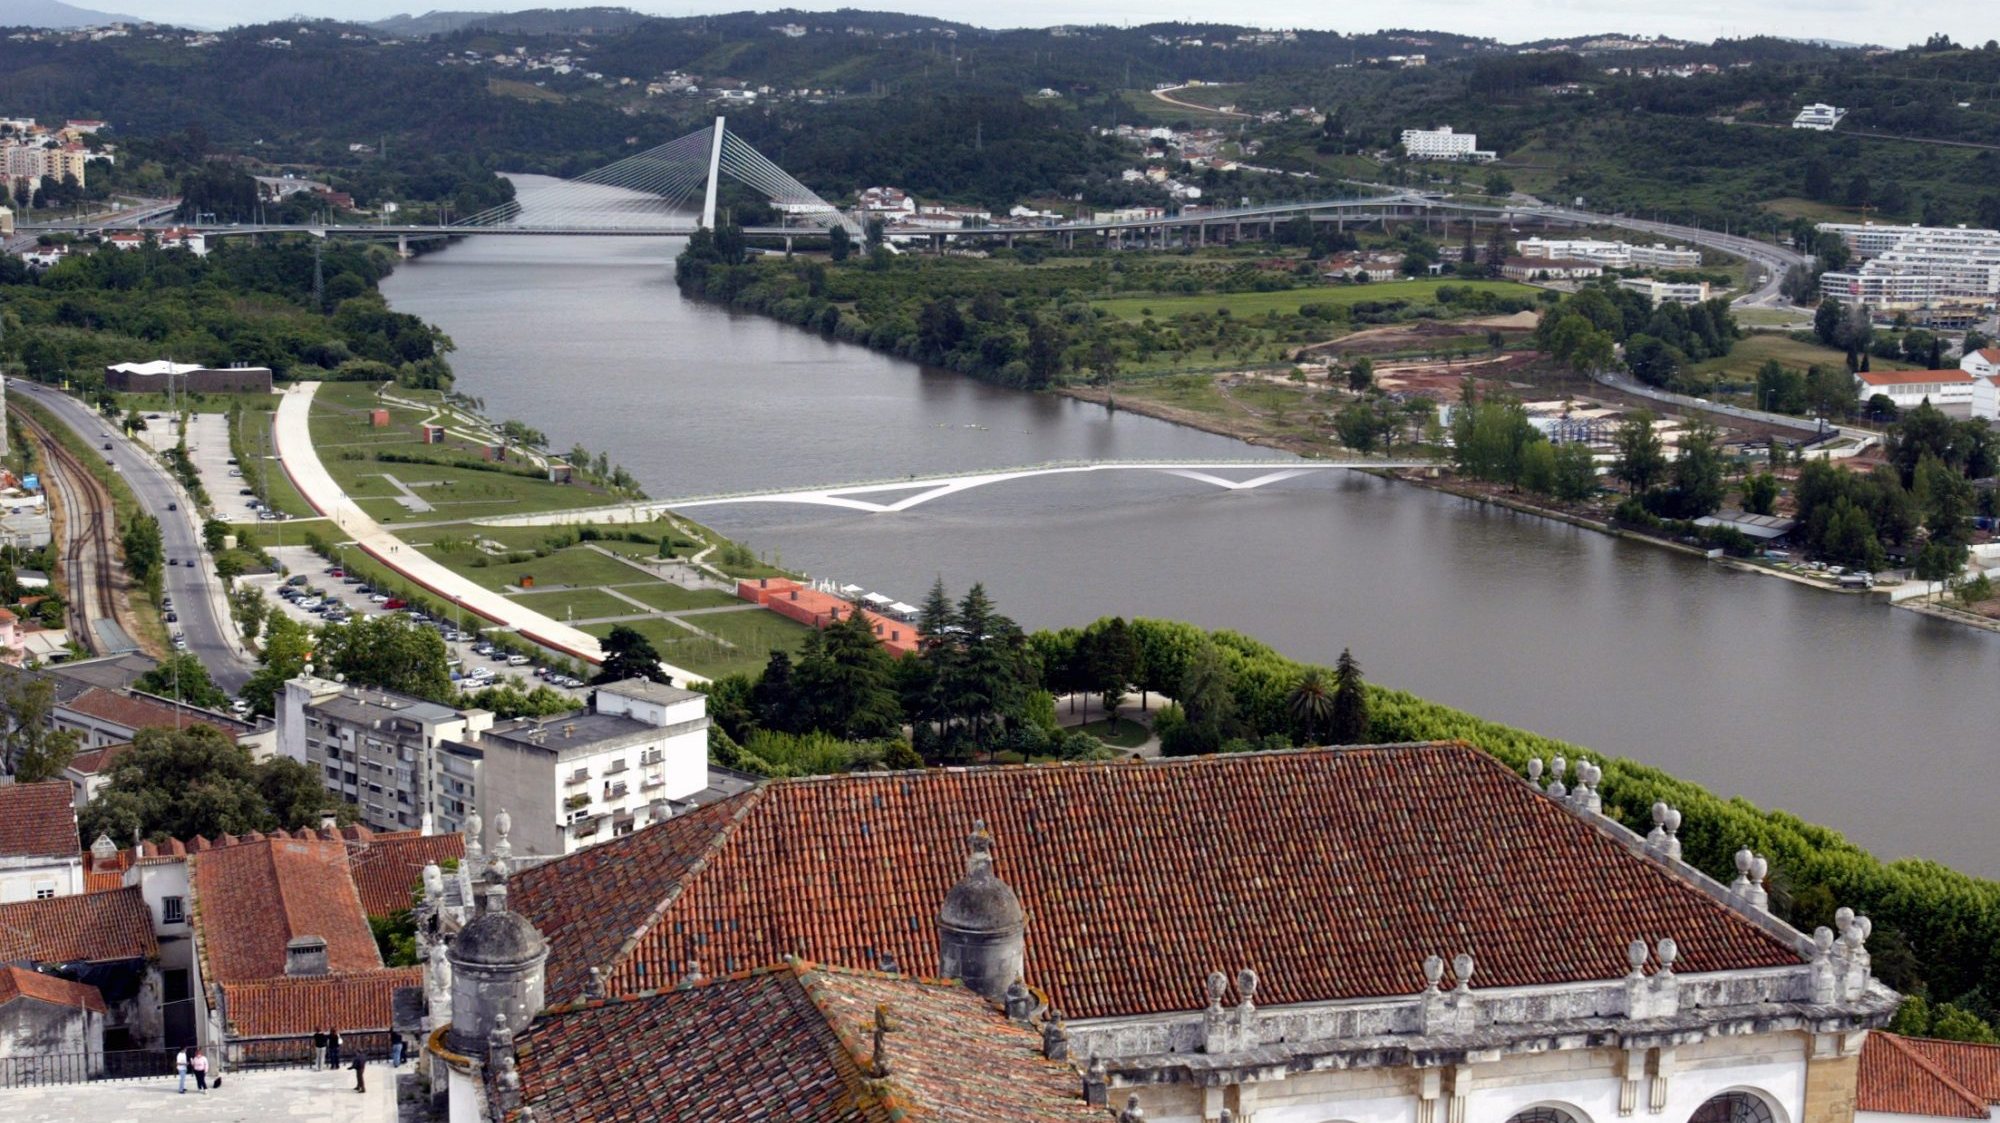 Com a população mais ativa, Coimbra torna-se numa cidade &quot;que se eleva em patamar mais elevado e ganha outra qualidade de vida democrática&quot;